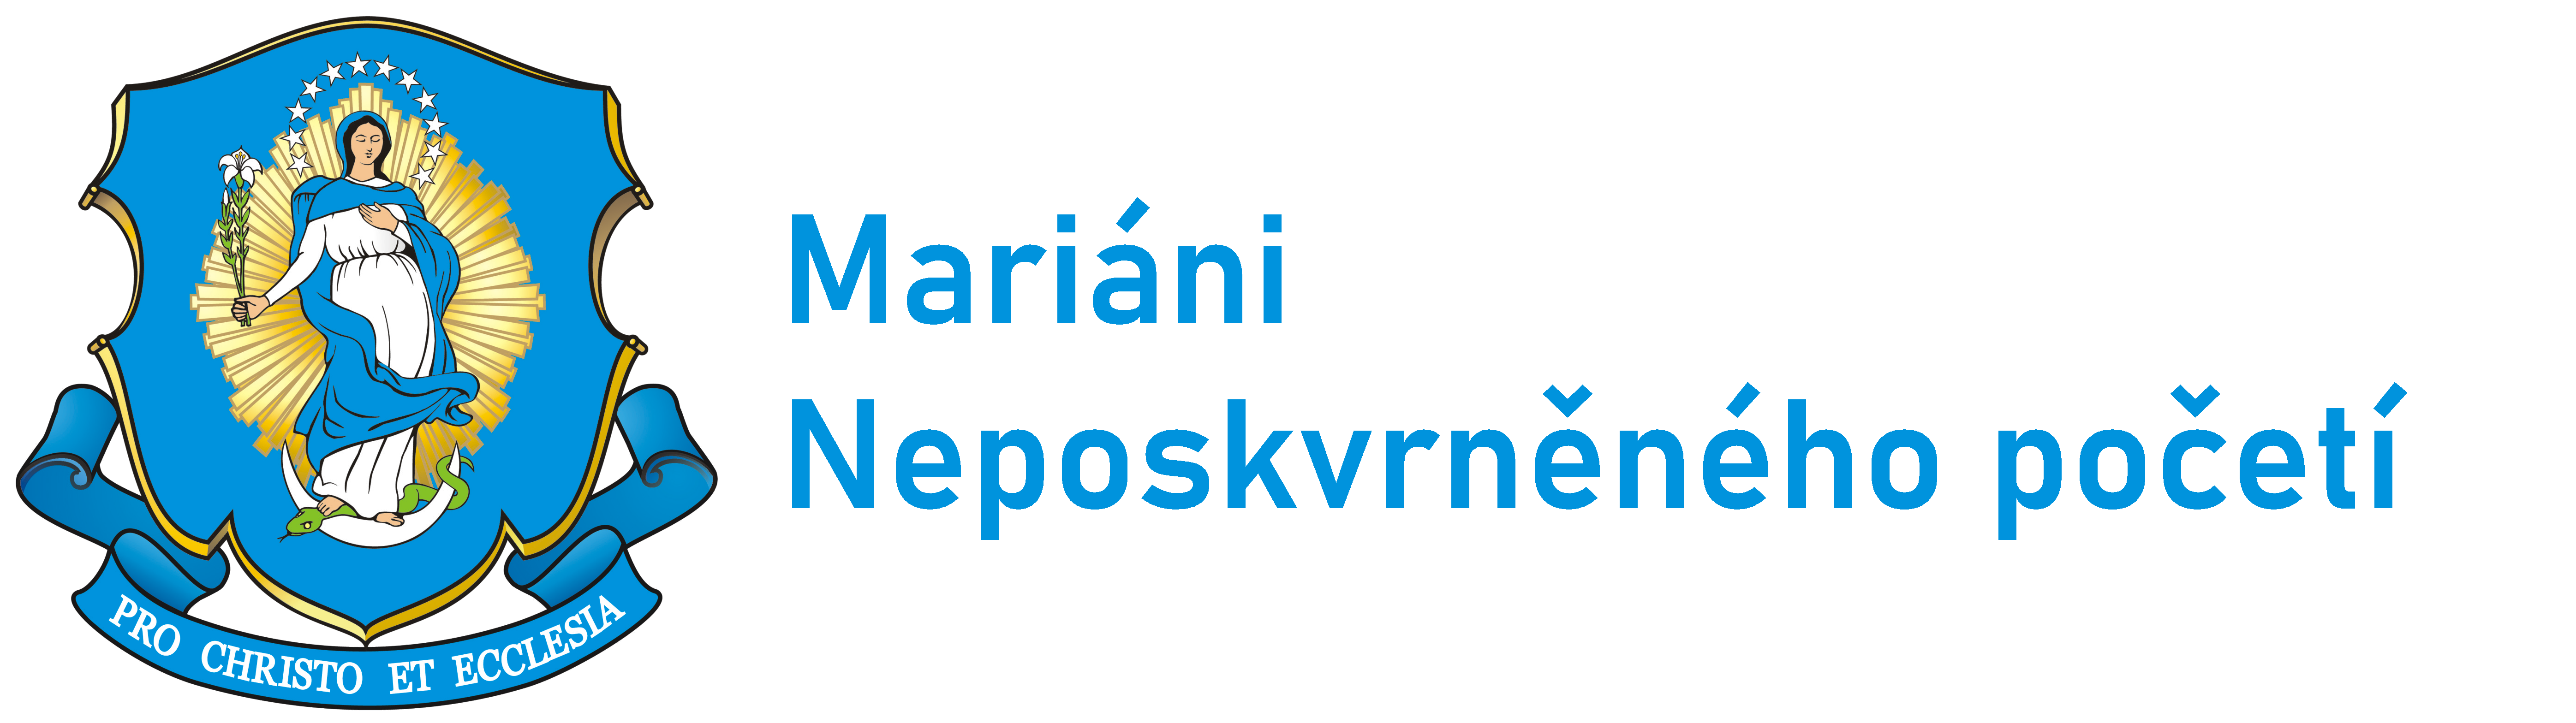 Logo Mariáni ČR